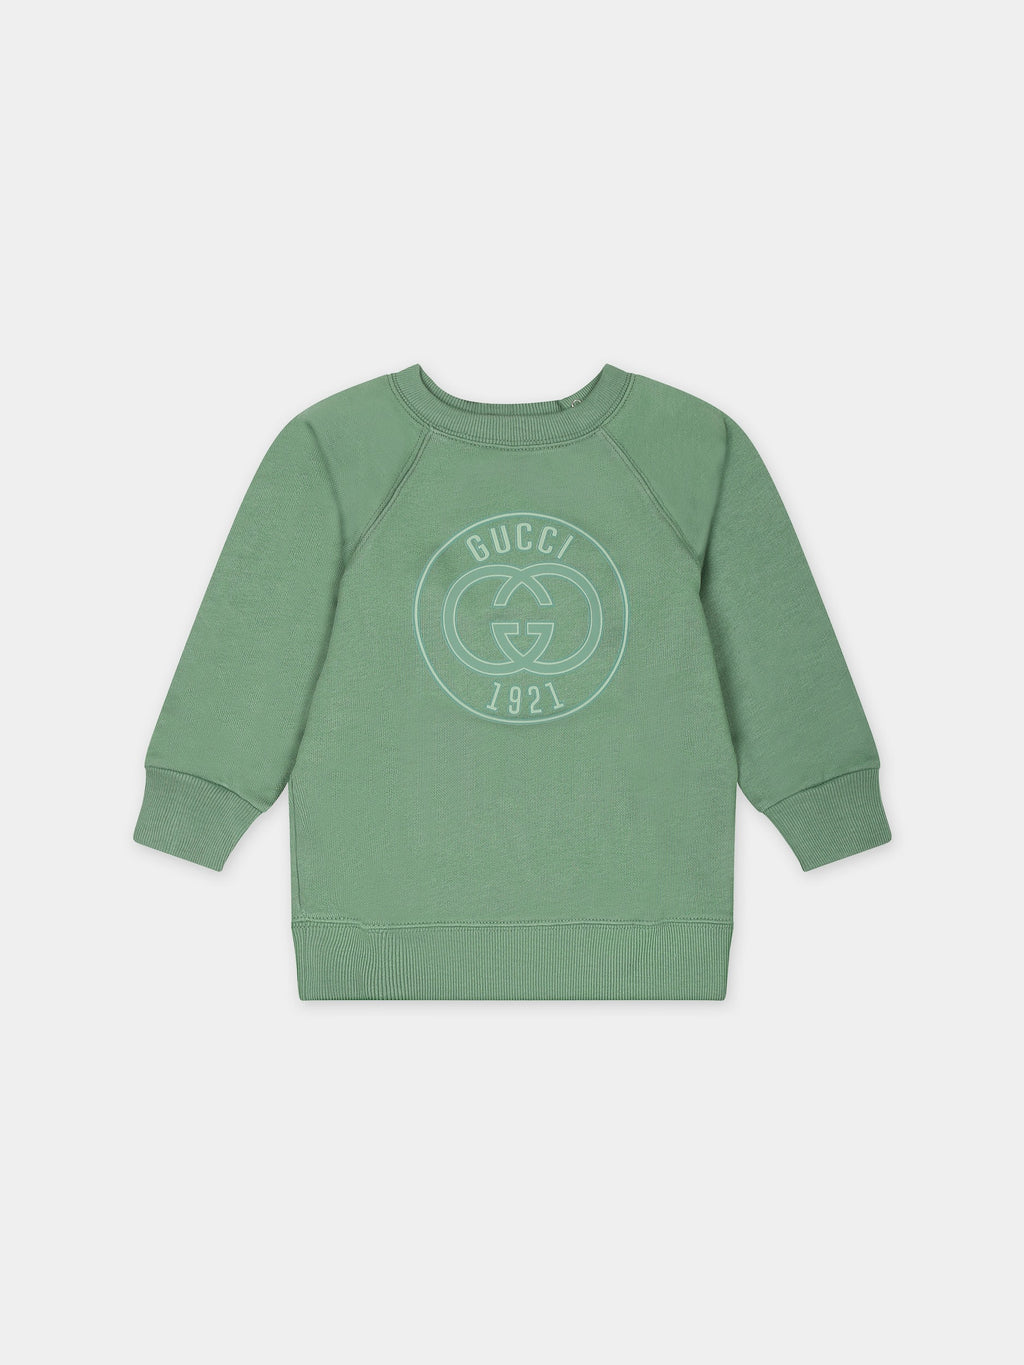 Sweat vert pour bébé enfants avec logo Gucci 1921